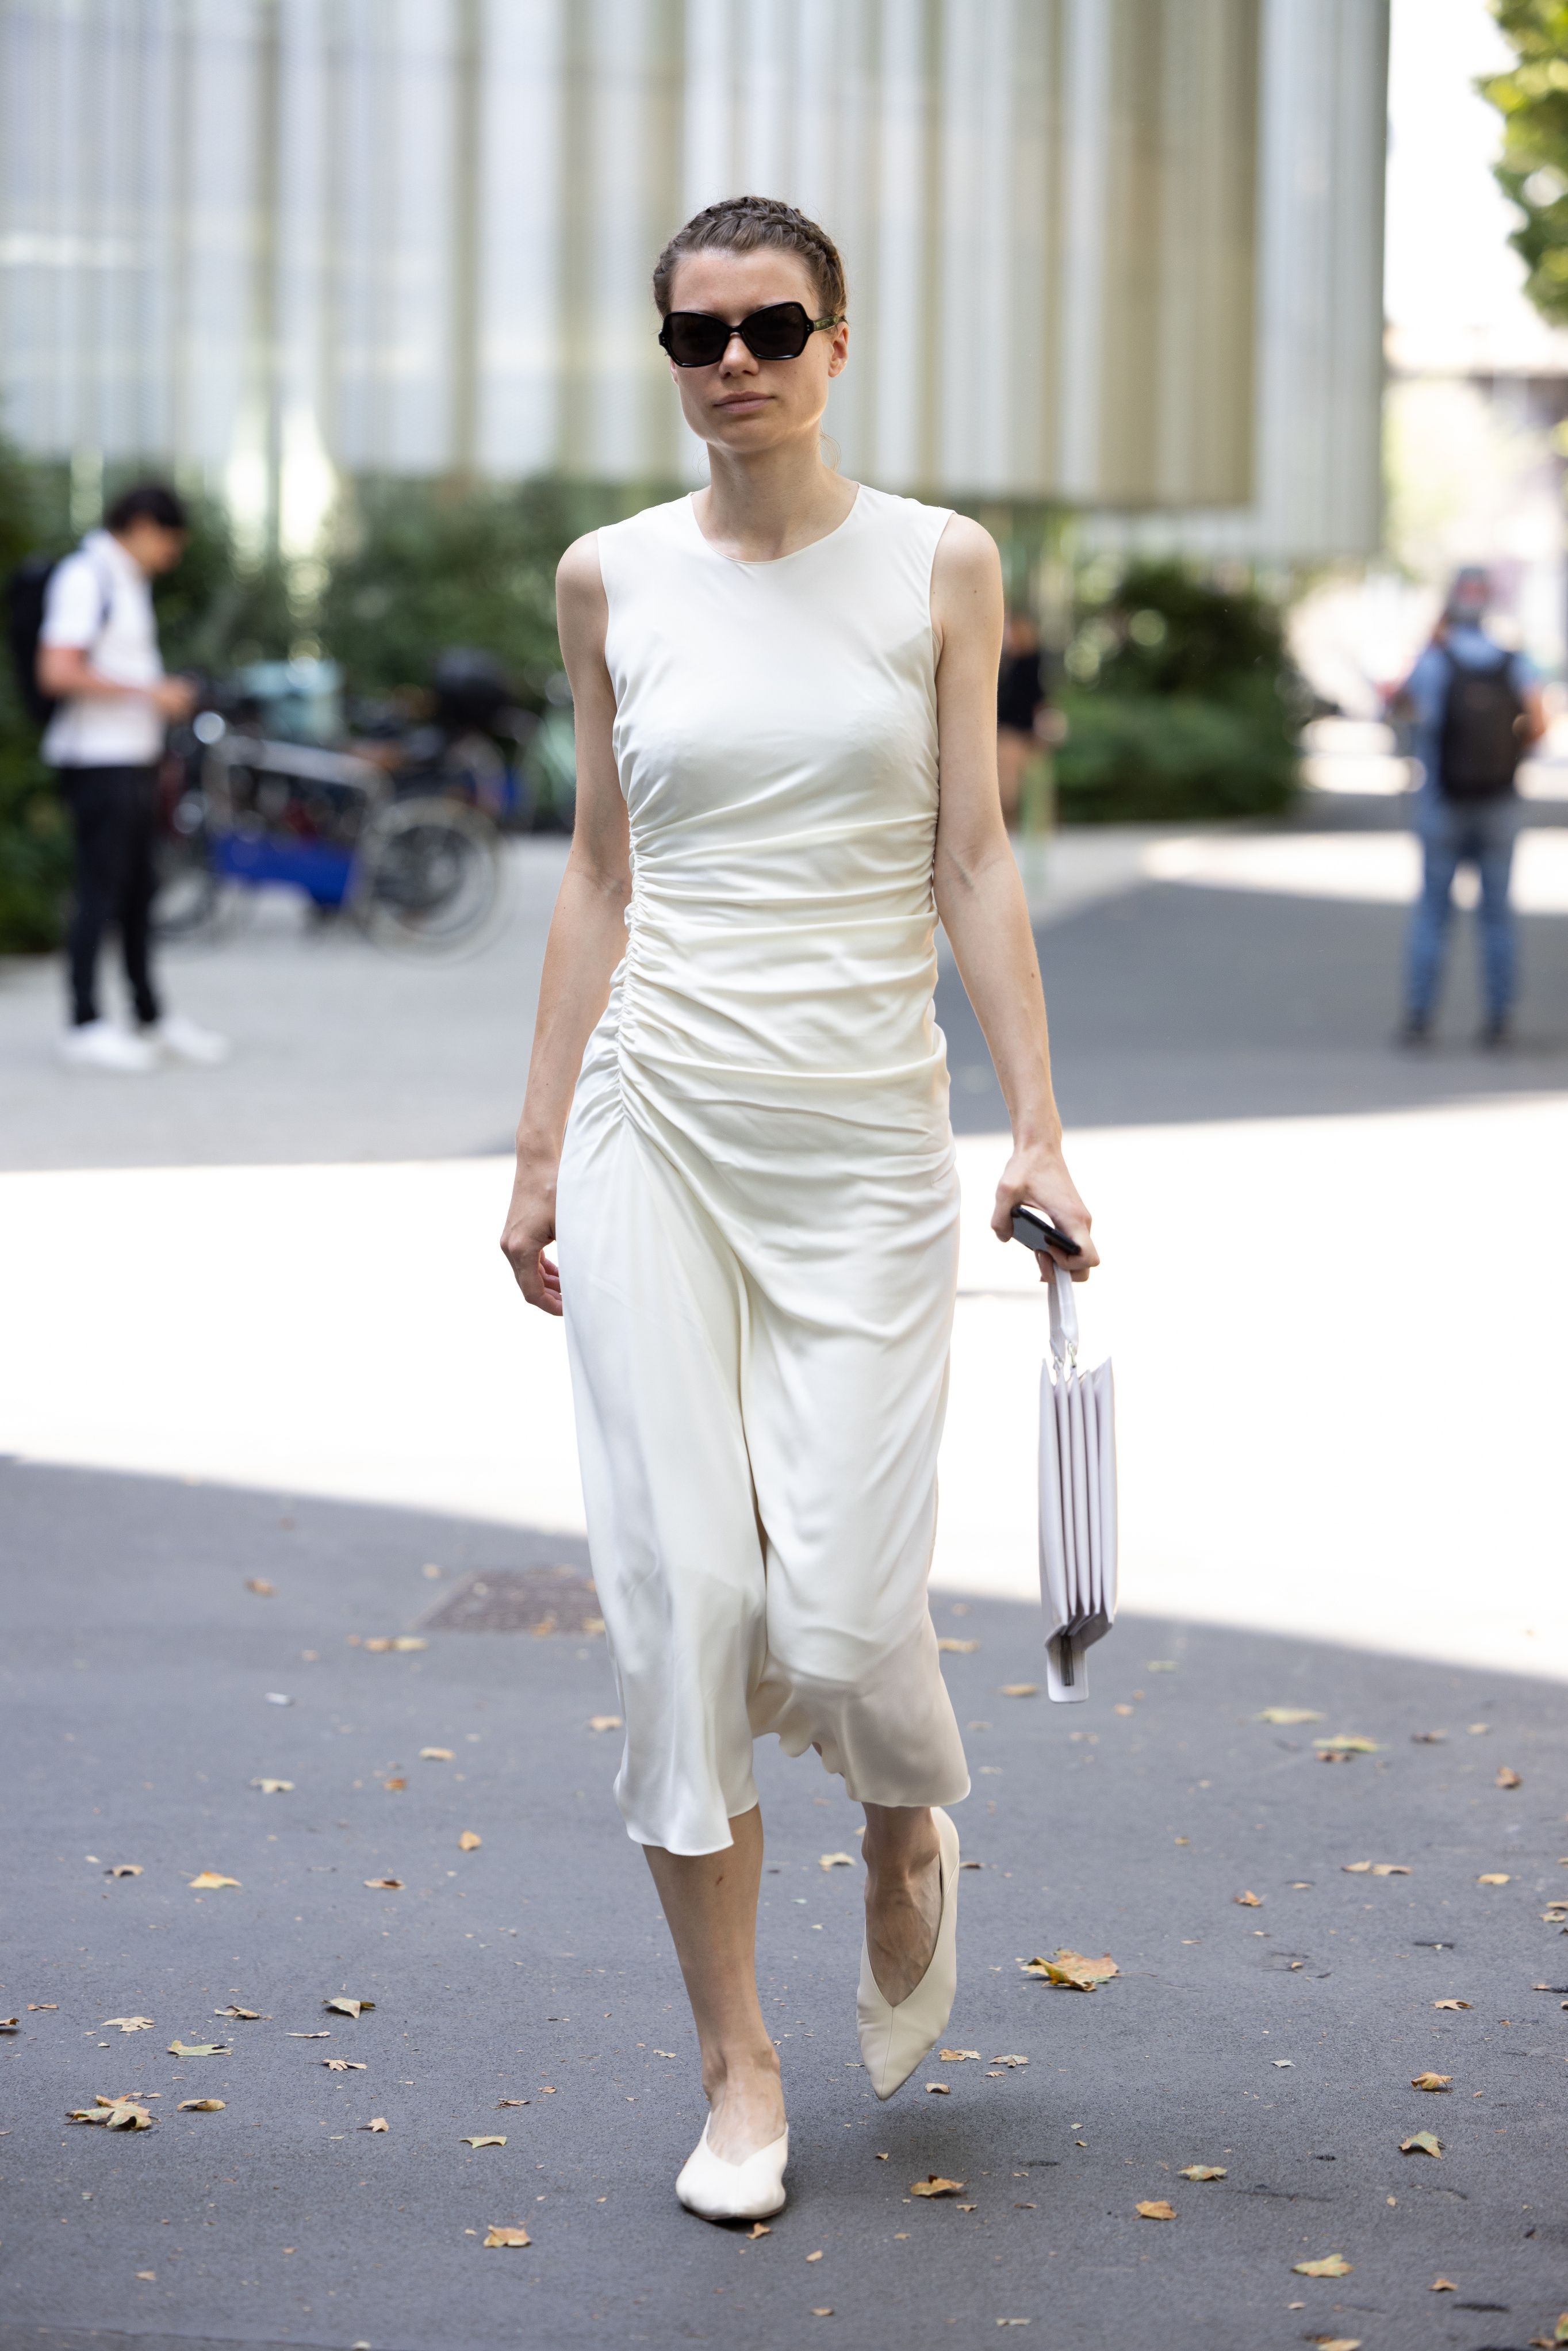 10 looks a la moda para llevar un vestido blanco este verano